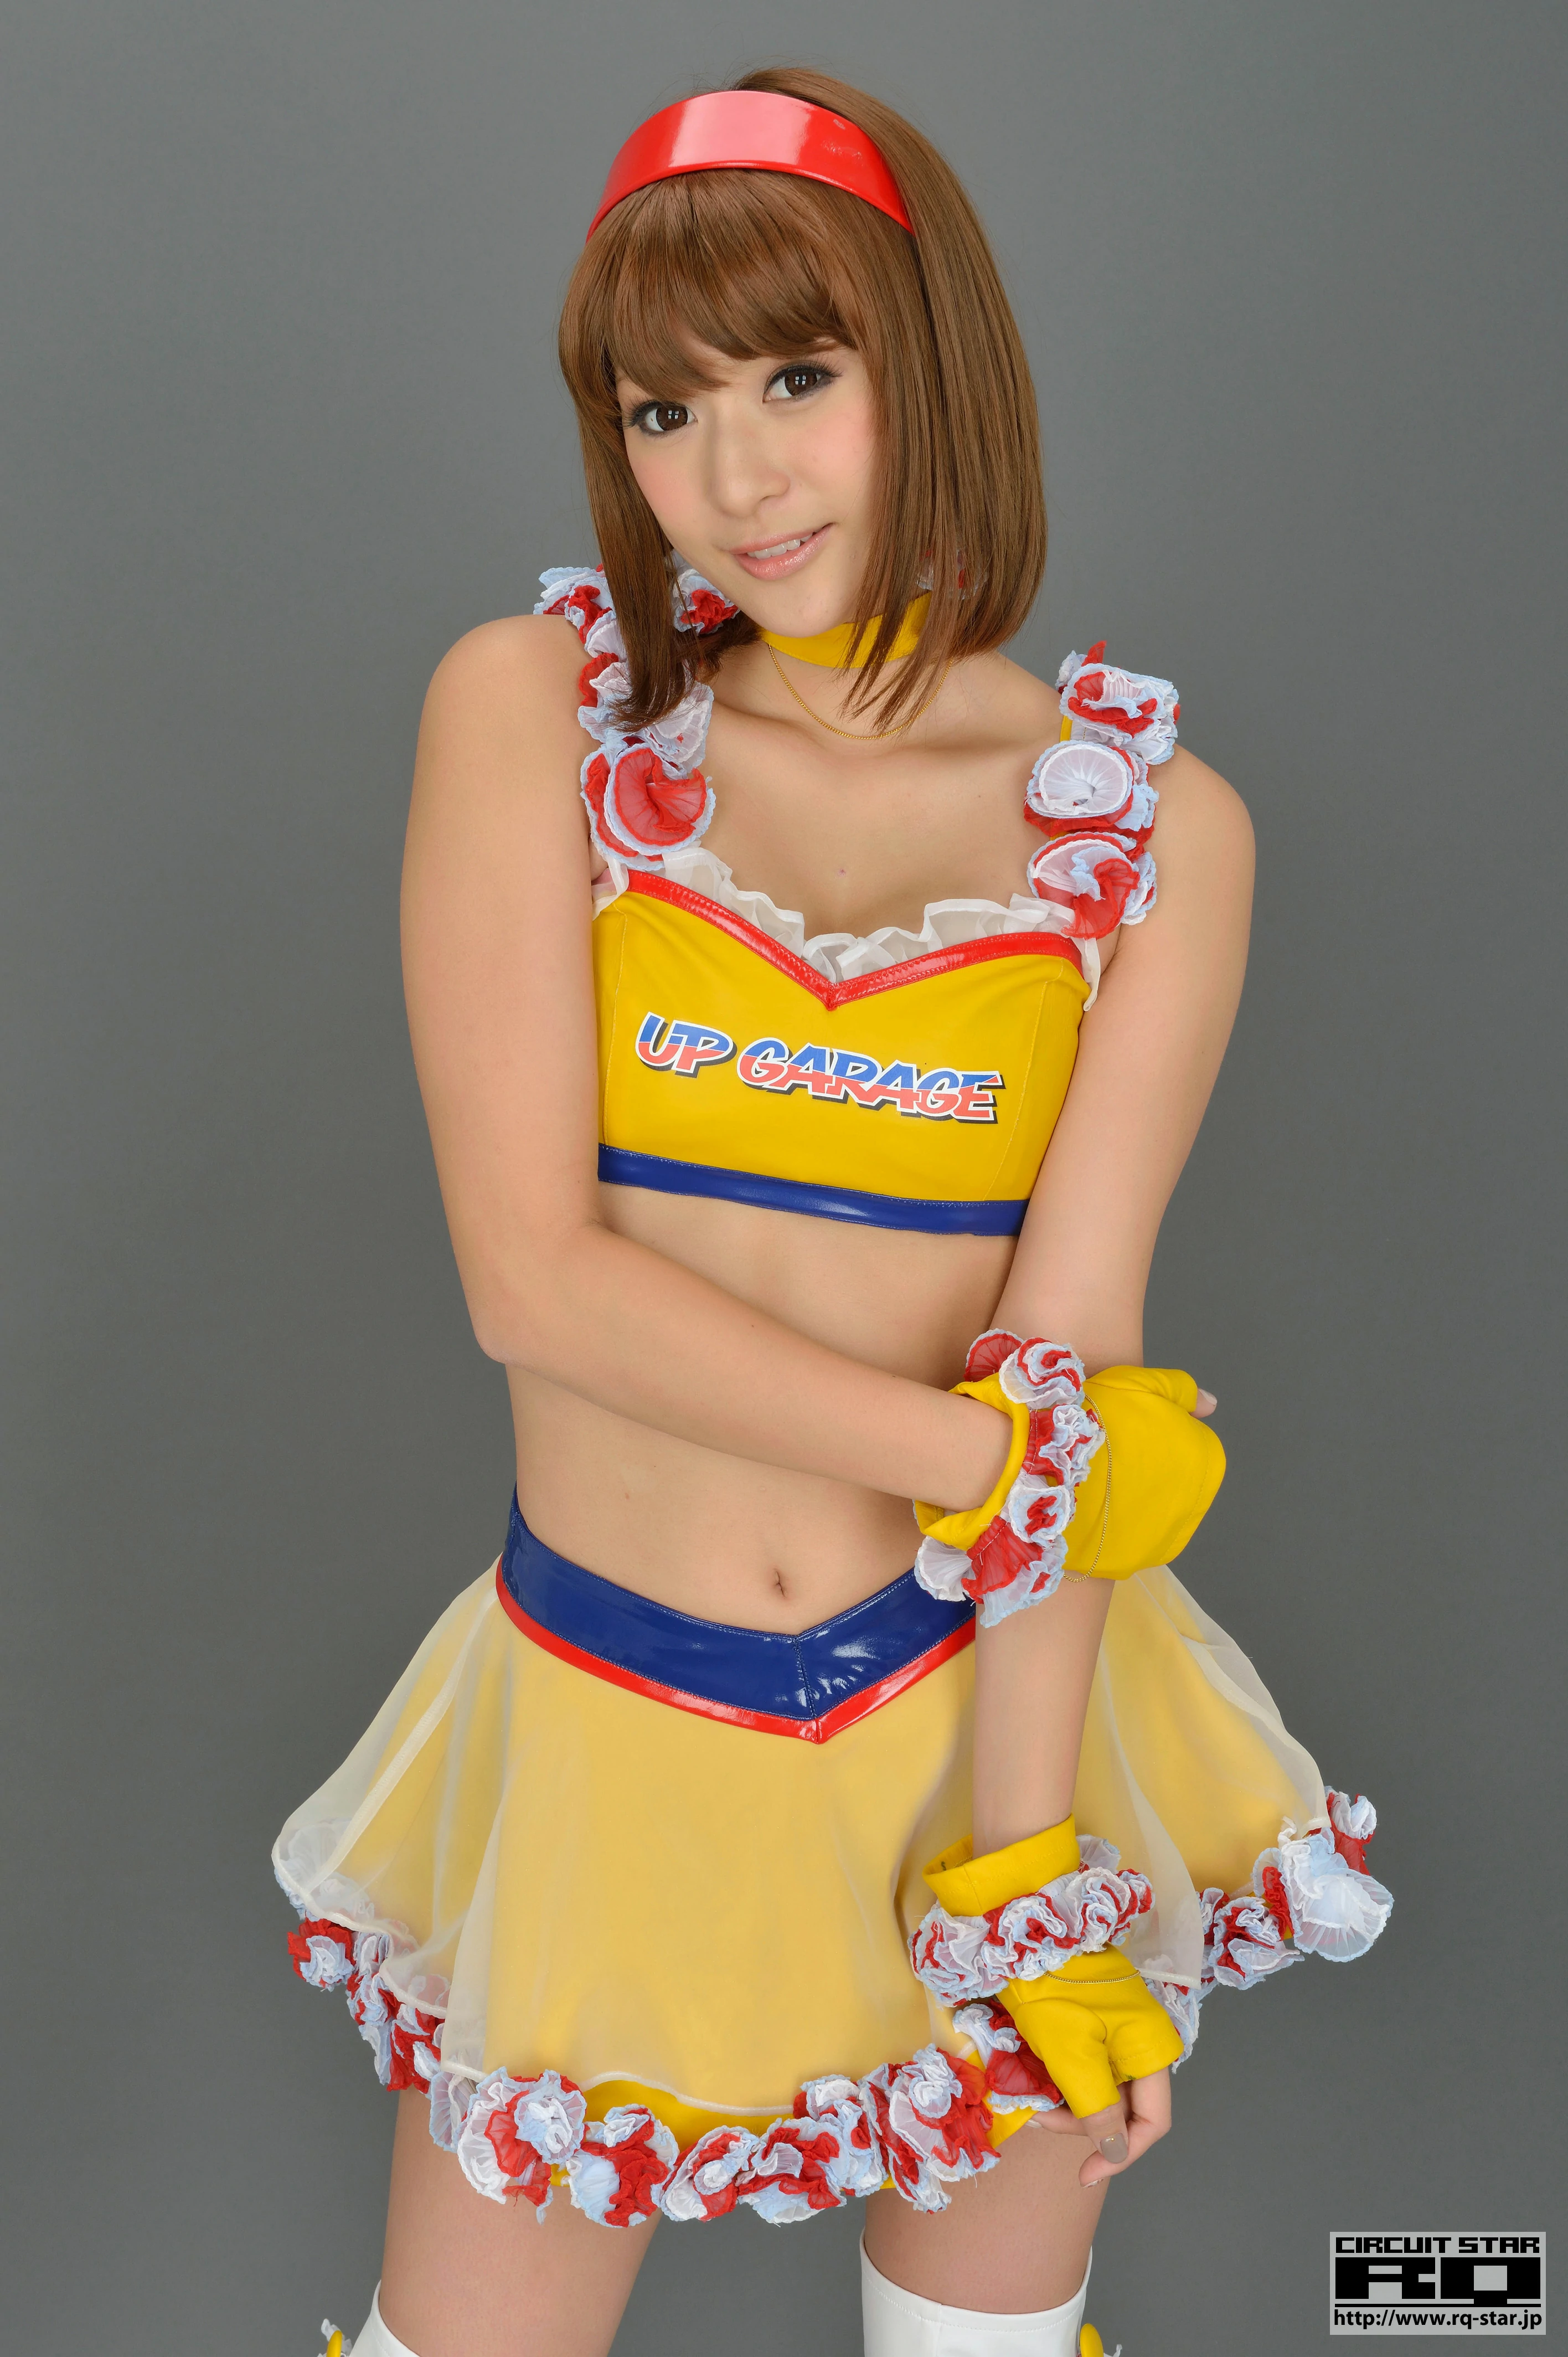 [RQ-STAR写真]NO.00733 日本赛车女郎 しばはらまい（柴原麻衣，Mai Shibahara）黄色制服加短裙性感写真集,022